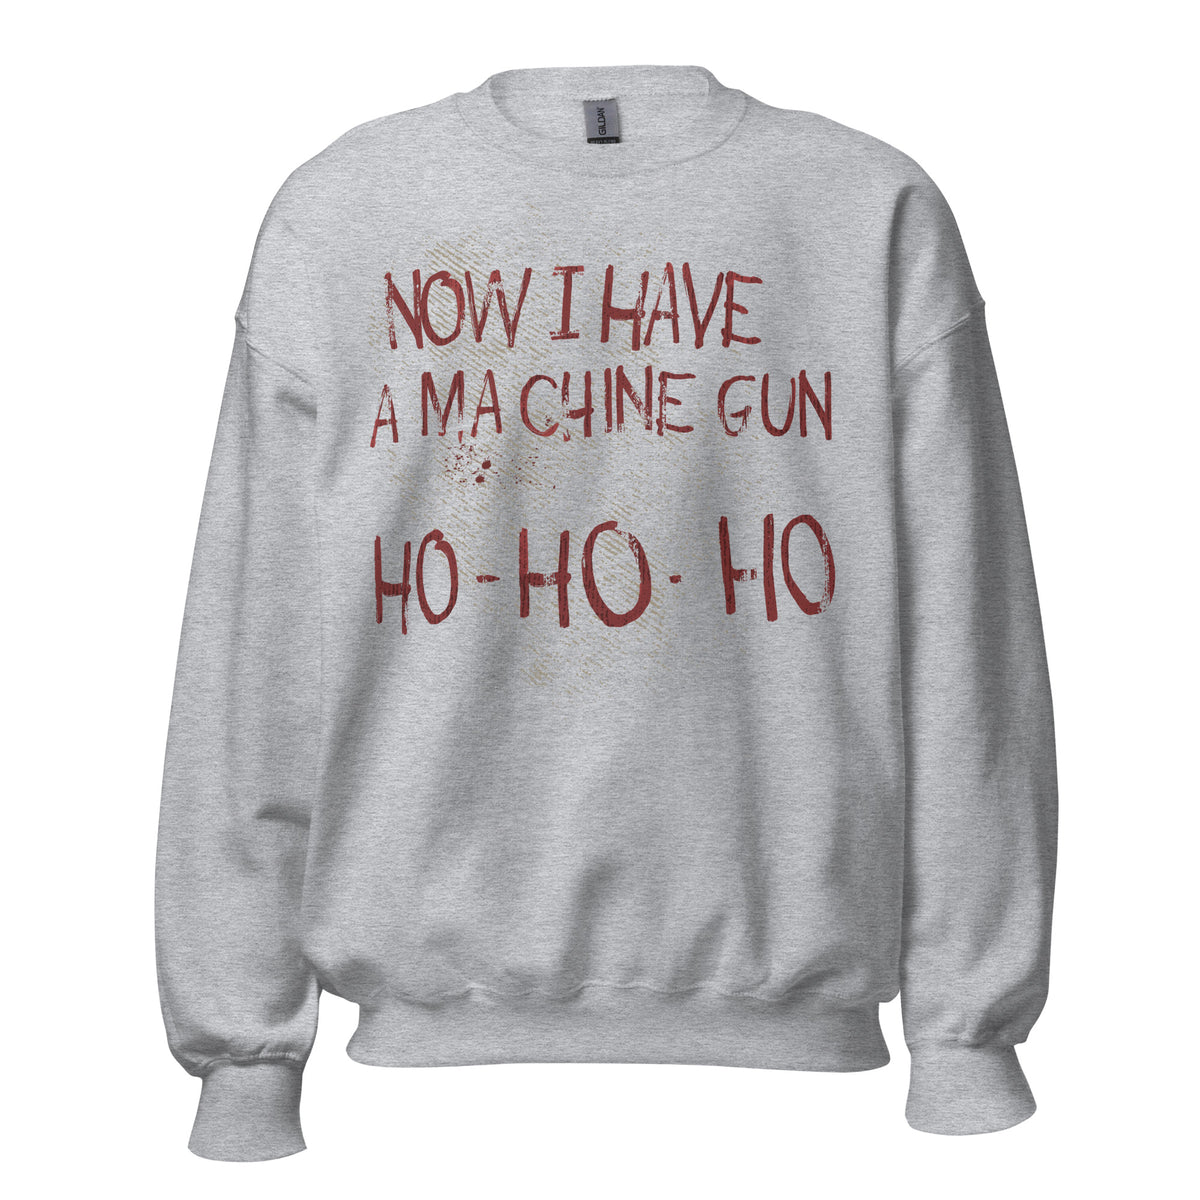 NOW I HAVE A MACHINE GUN Sweatshirt